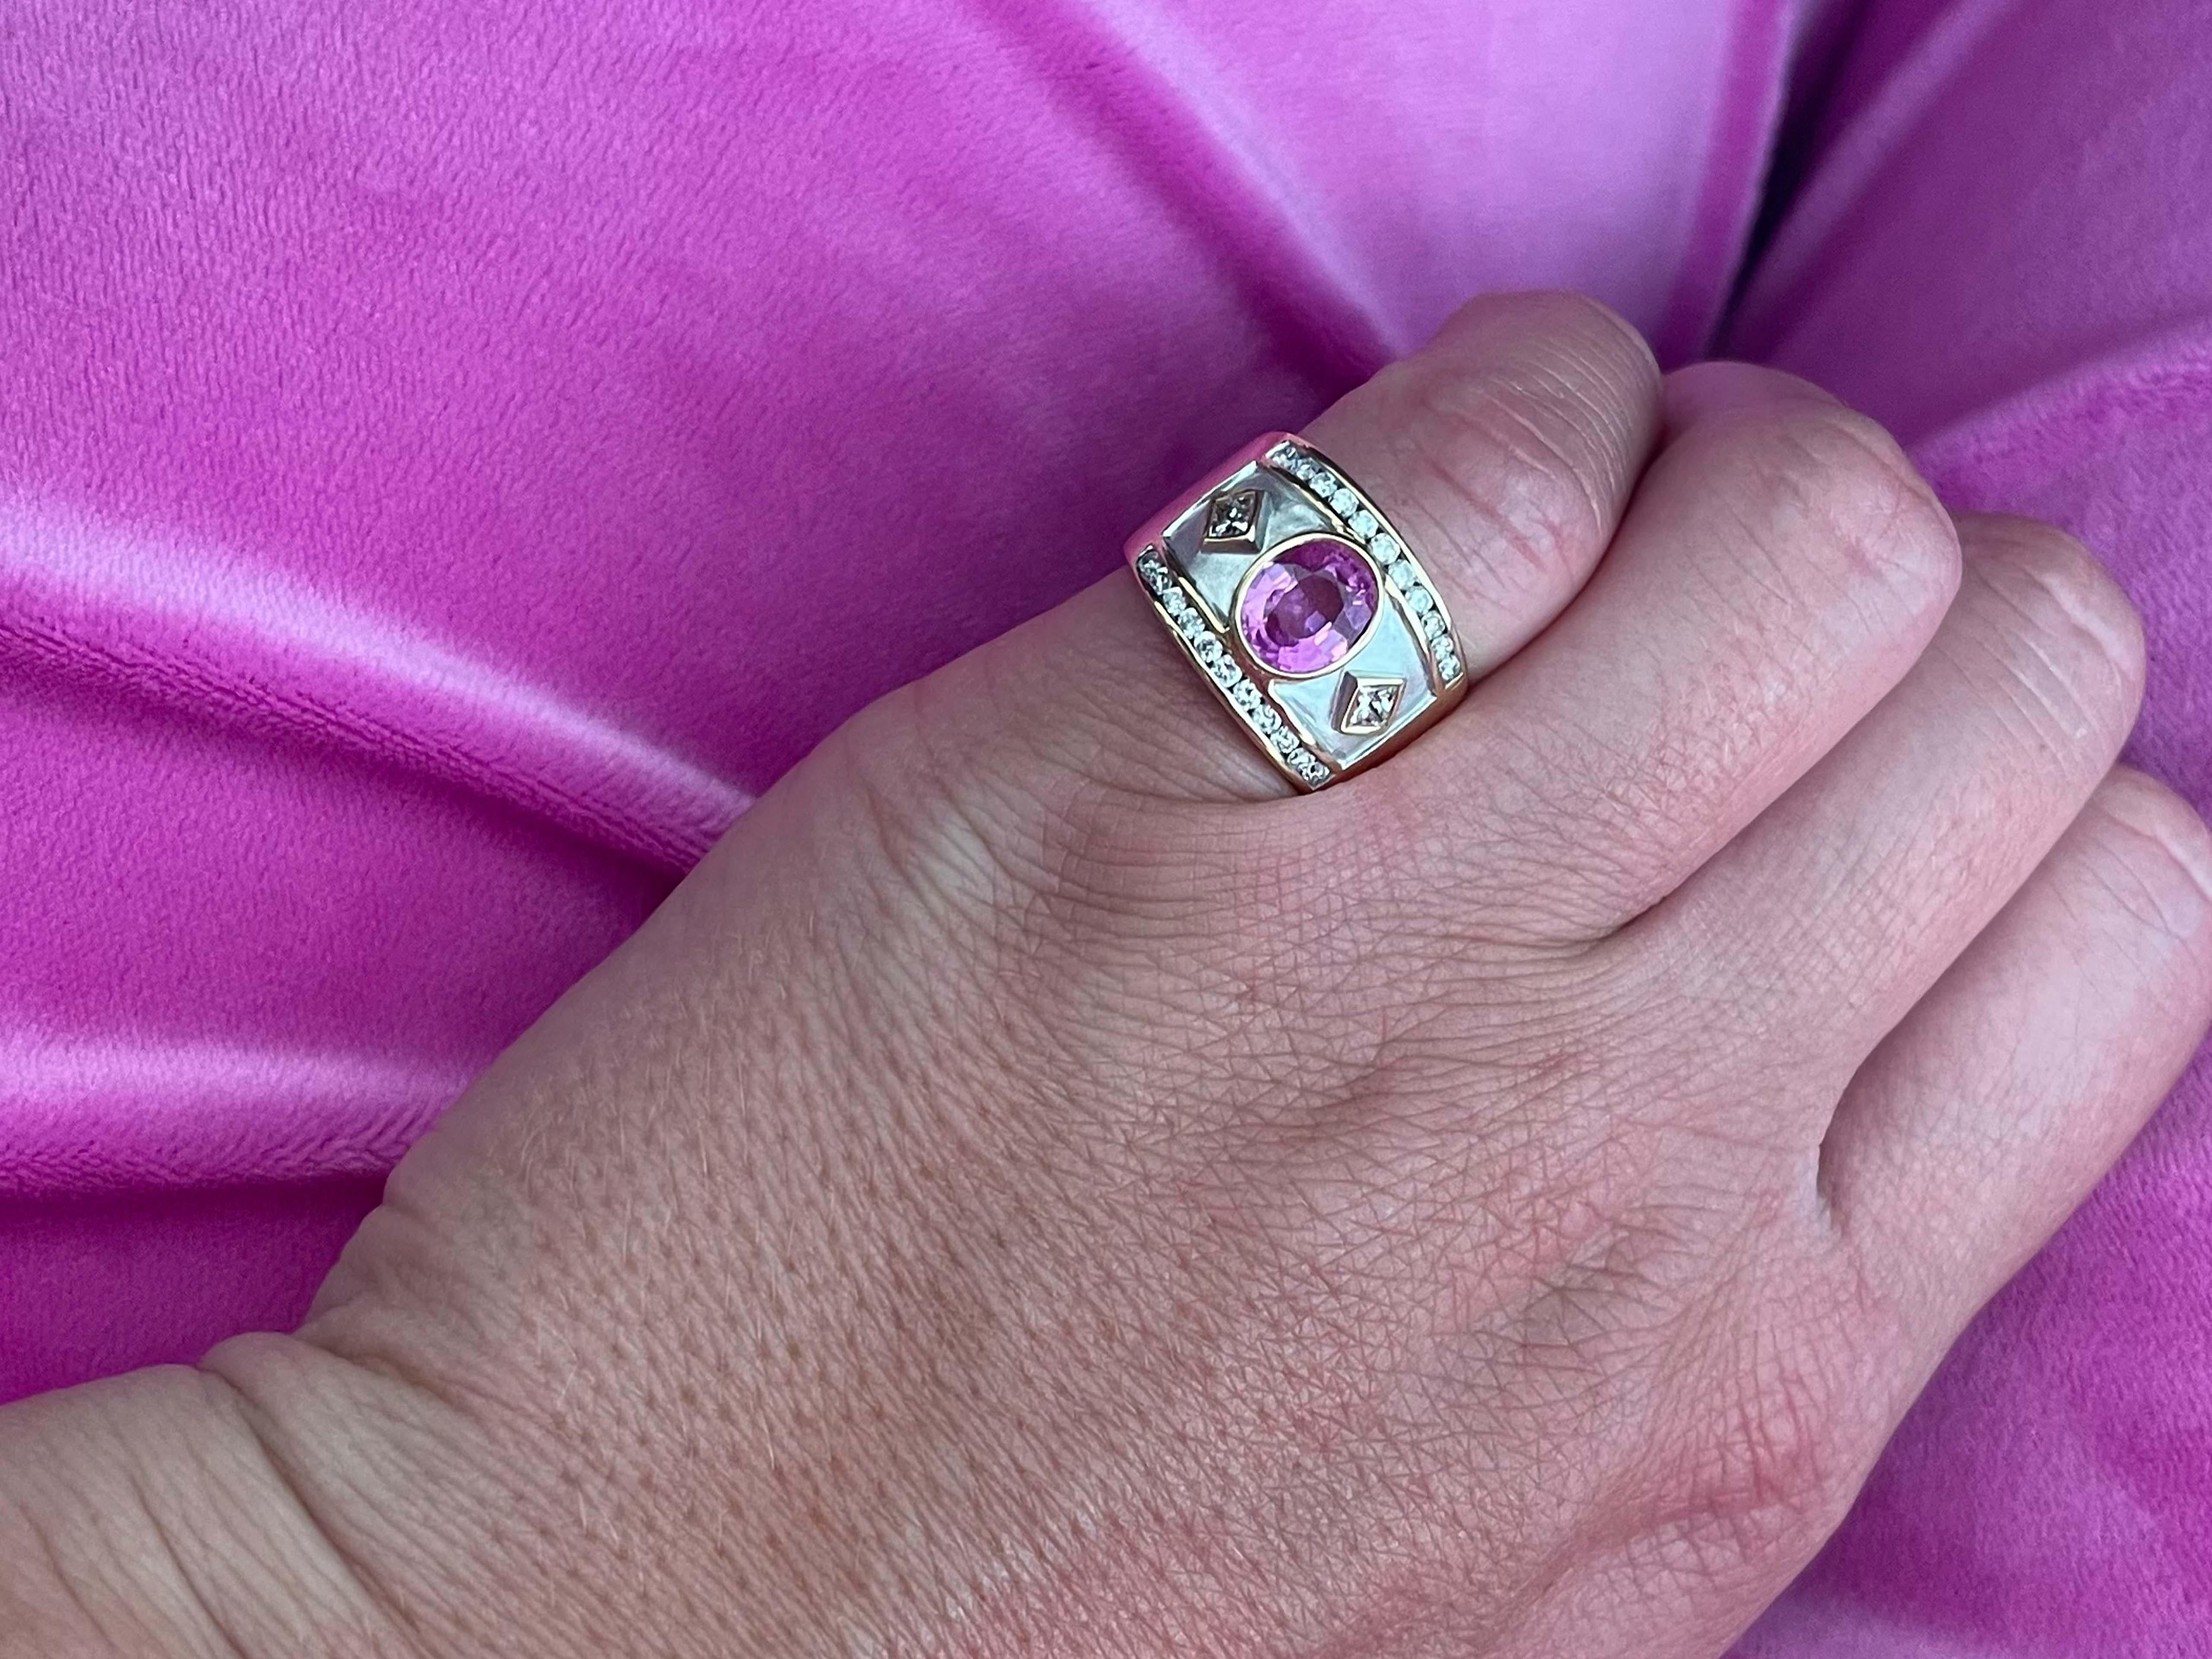 Dieser wunderschöne Ring zeigt einen ovalen, in die Lünette gefassten rosa Turmalin von 1,28 Karat. Neben dem Turmalin befinden sich 2 Diamanten im Prinzessschliff, einer auf jeder Seite, mit insgesamt 0,20 Karat. Am oberen und unteren Ende des